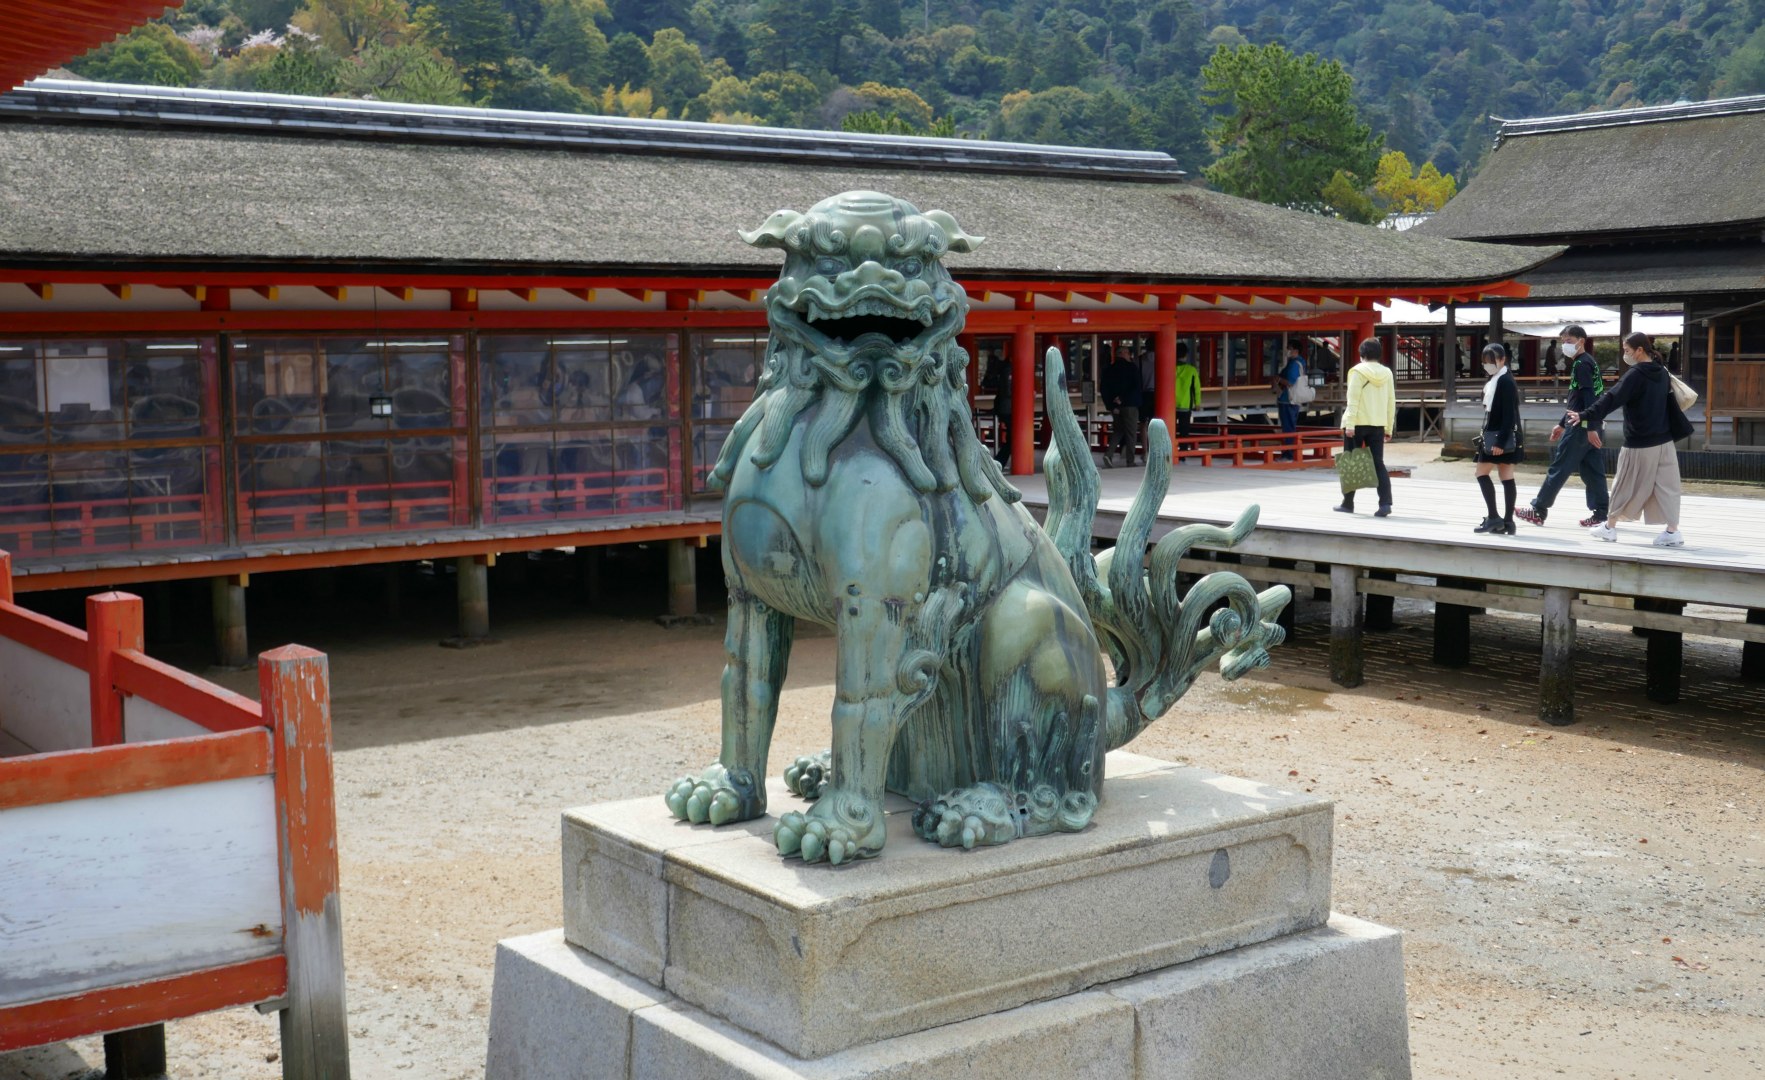 Lion-dog, Itsukushima Shrine, Miyajima Island